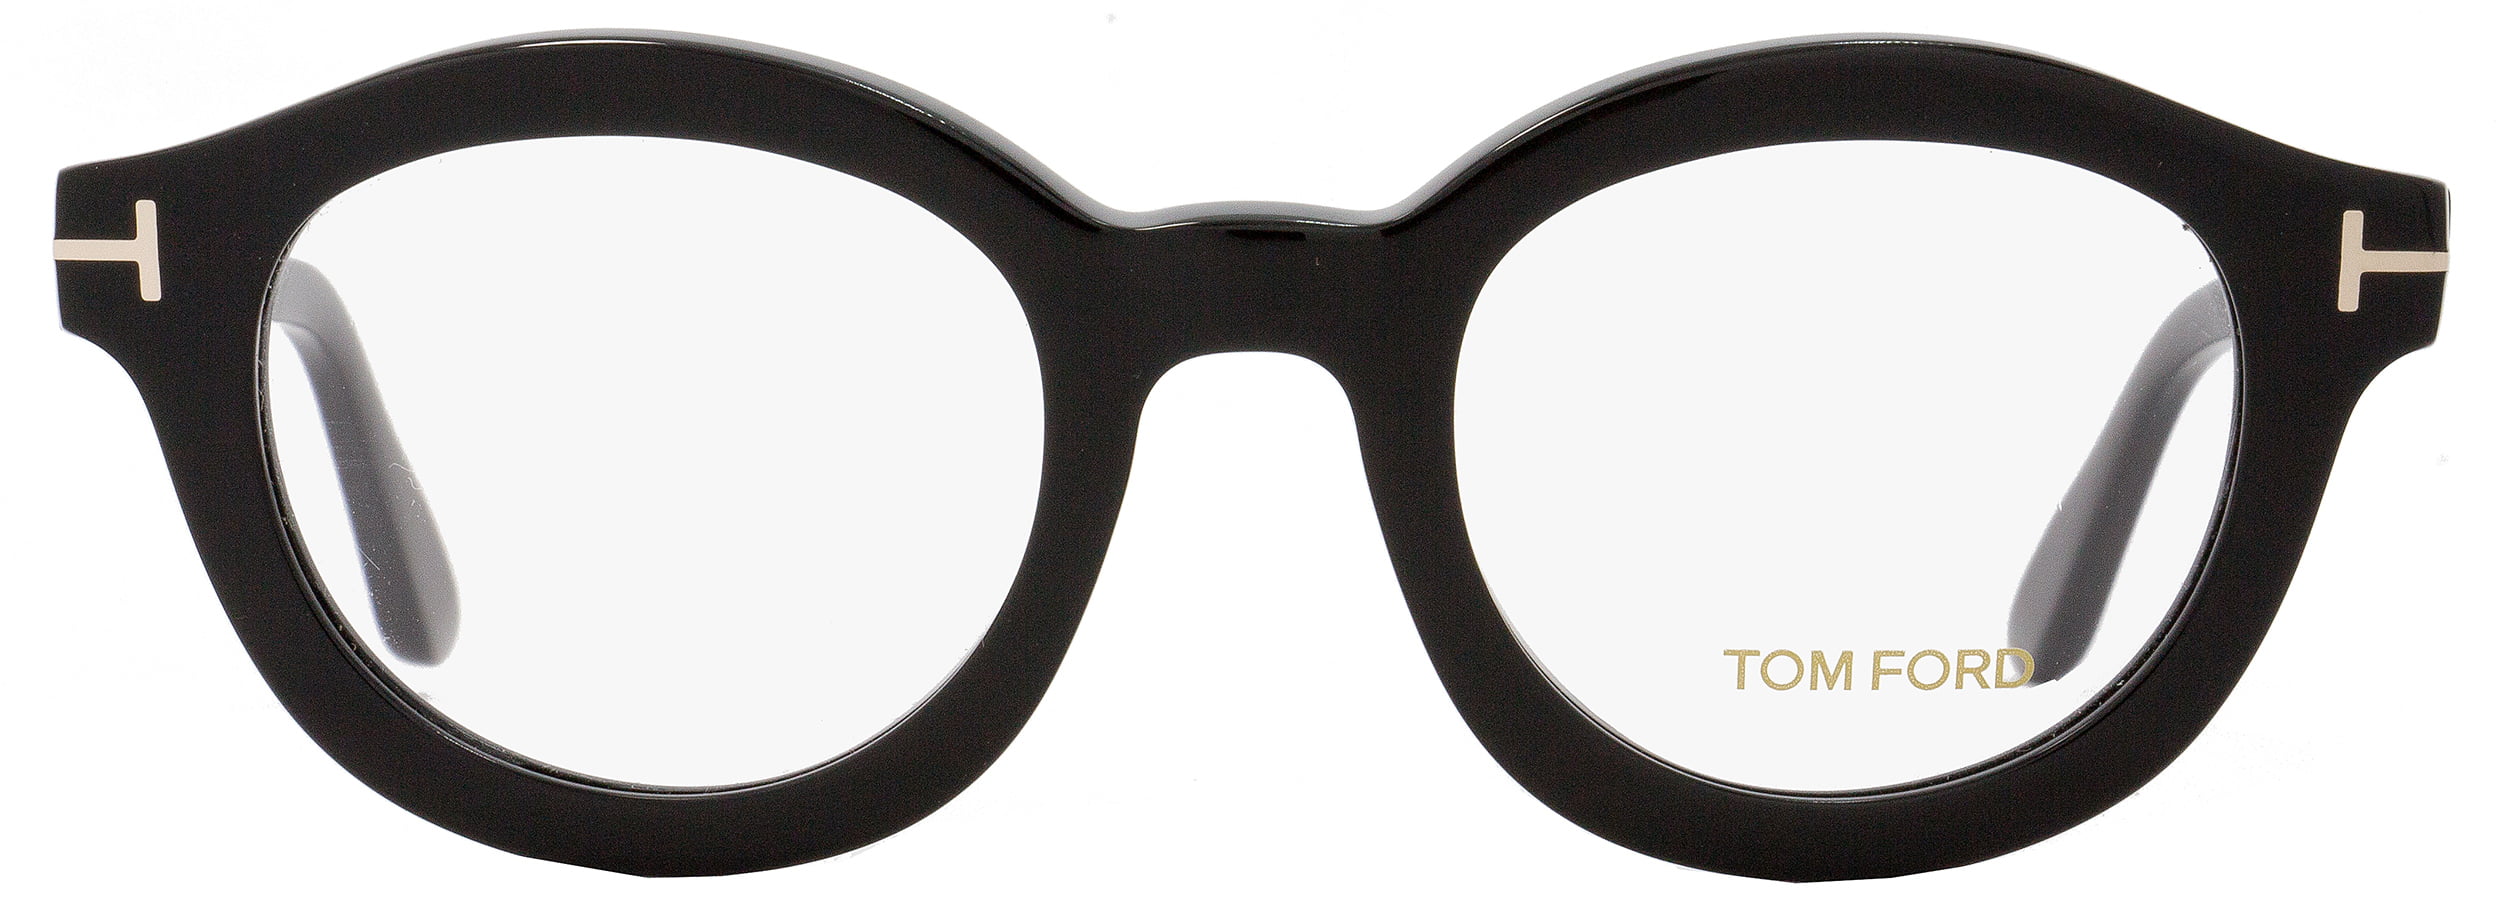 Tom Ford Round Eyeglasses TF5460 001 Size: 49mm Black FT5460 